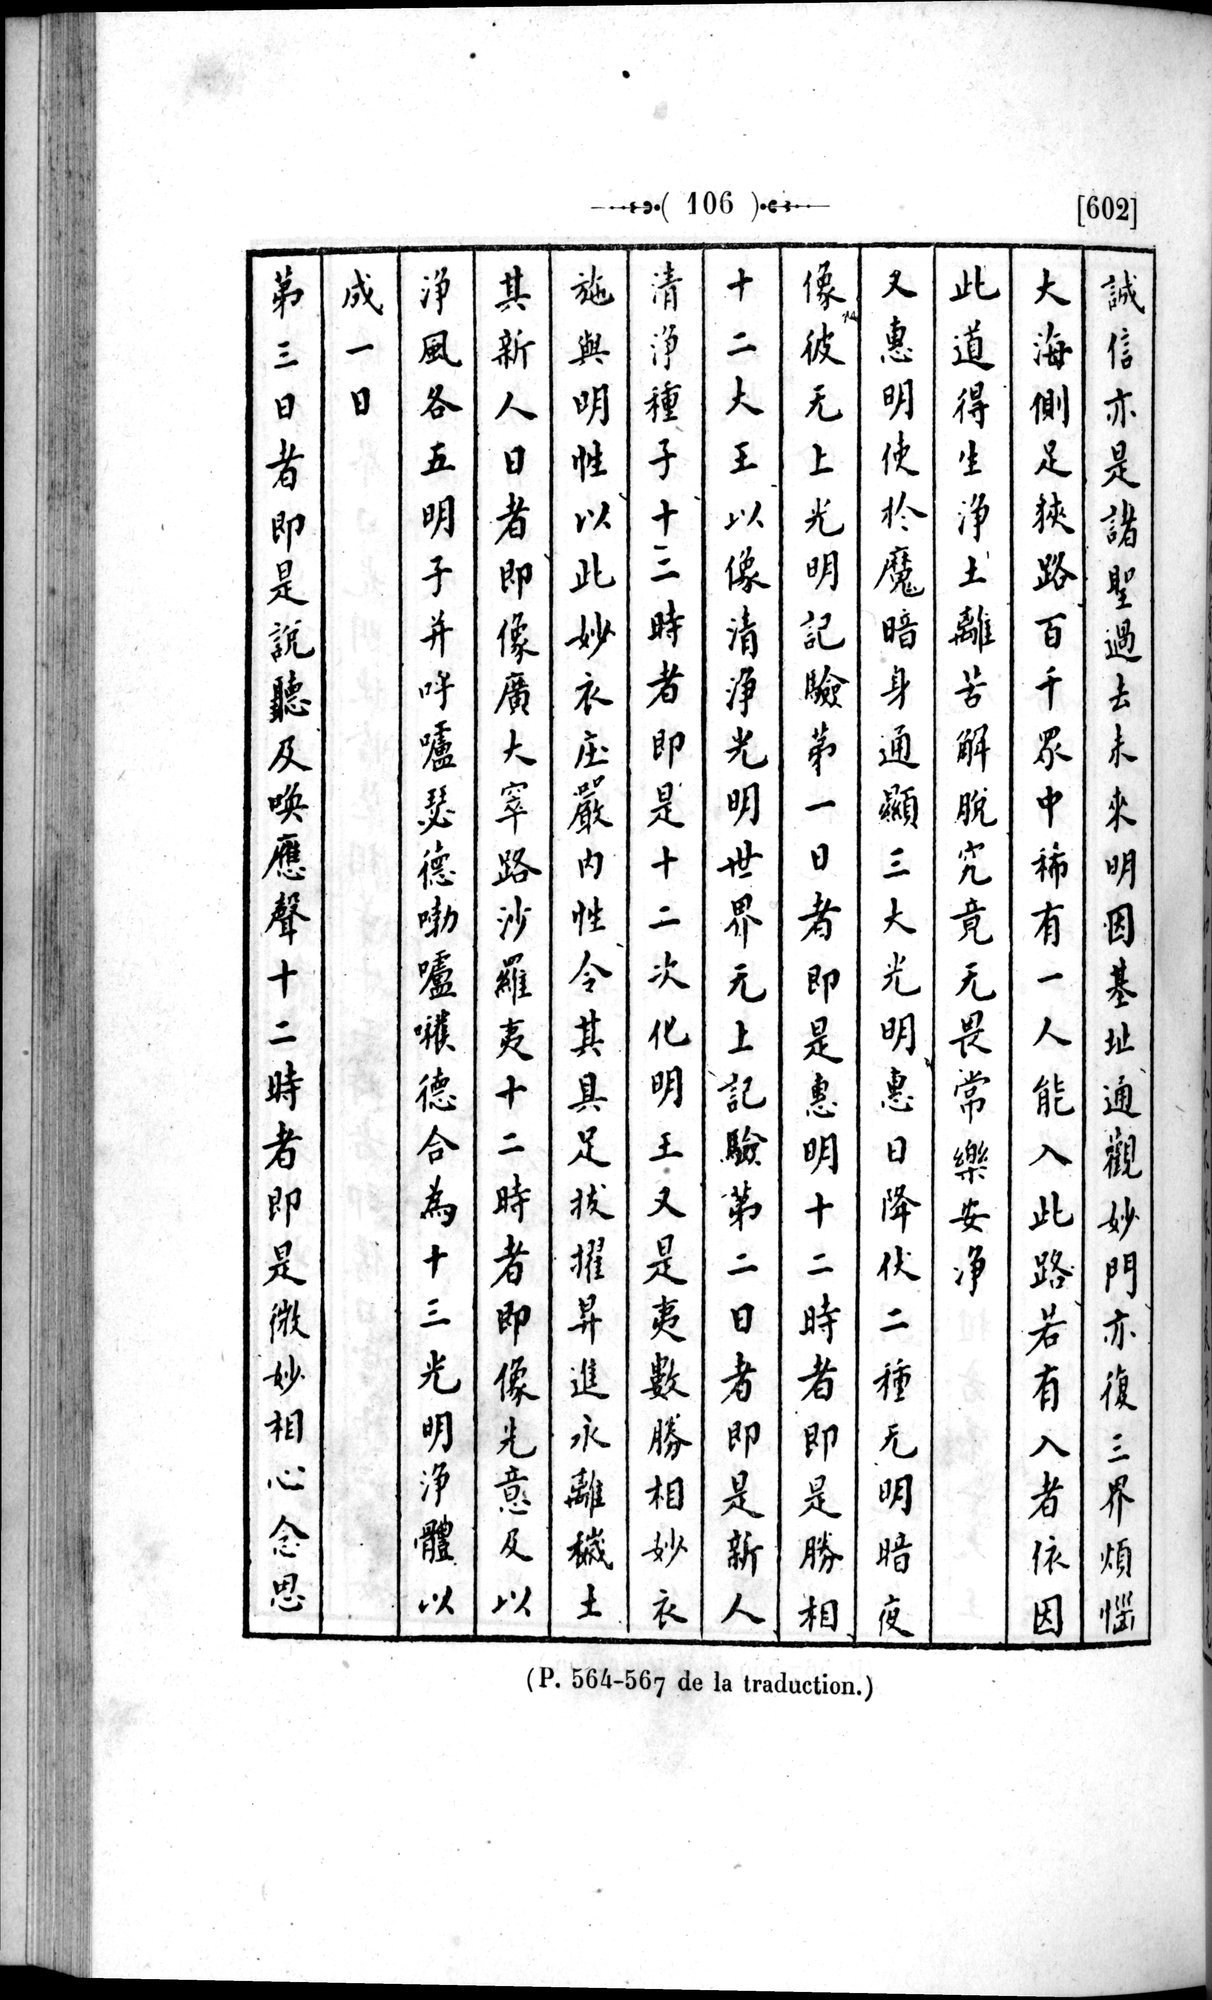 Un traité manichéen retrouvé en Chine : vol.1 / Page 116 (Grayscale High Resolution Image)